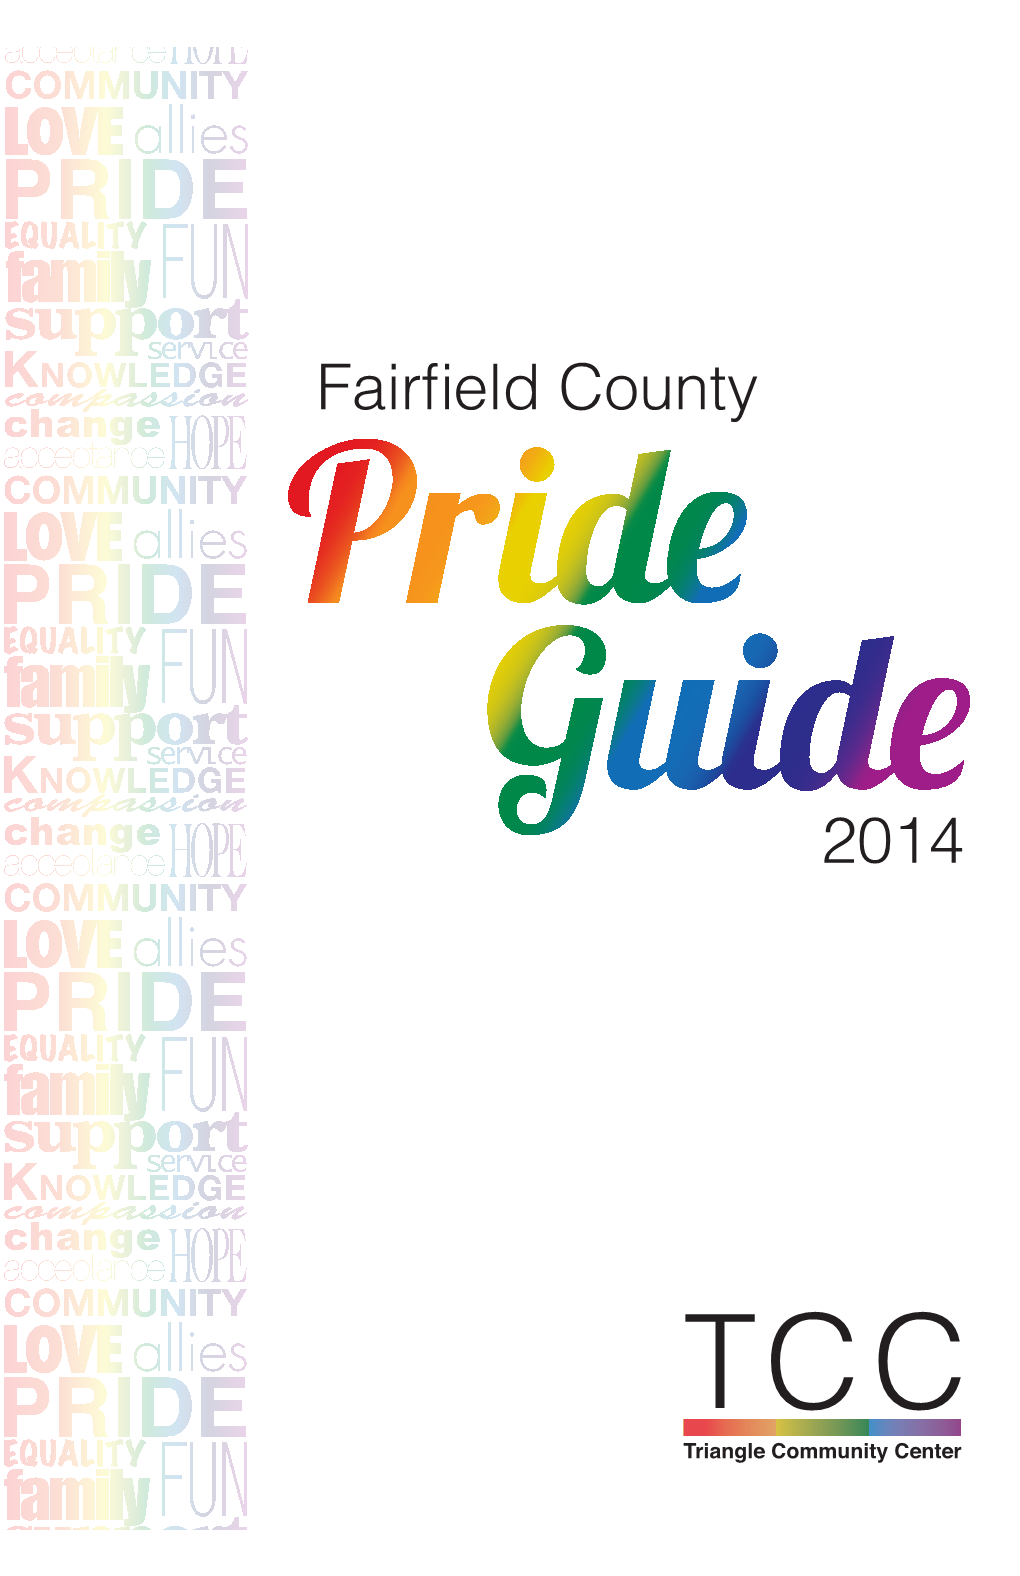 Fairfield County Pride Guide 2014 Dear Friends